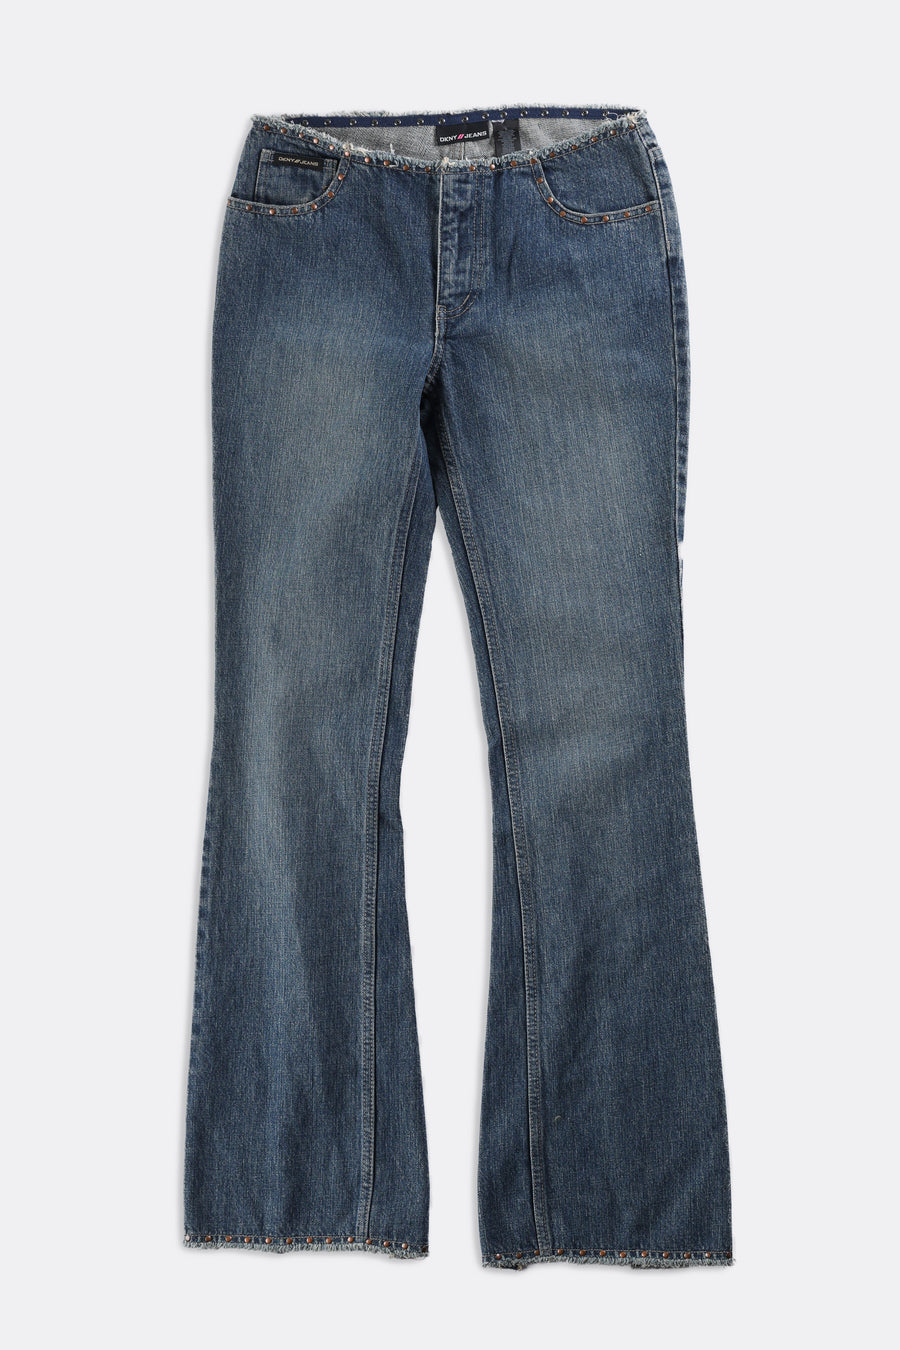 Vintage DKNY jeans  Dkny jeans, Women jeans, Boyfriend jeans